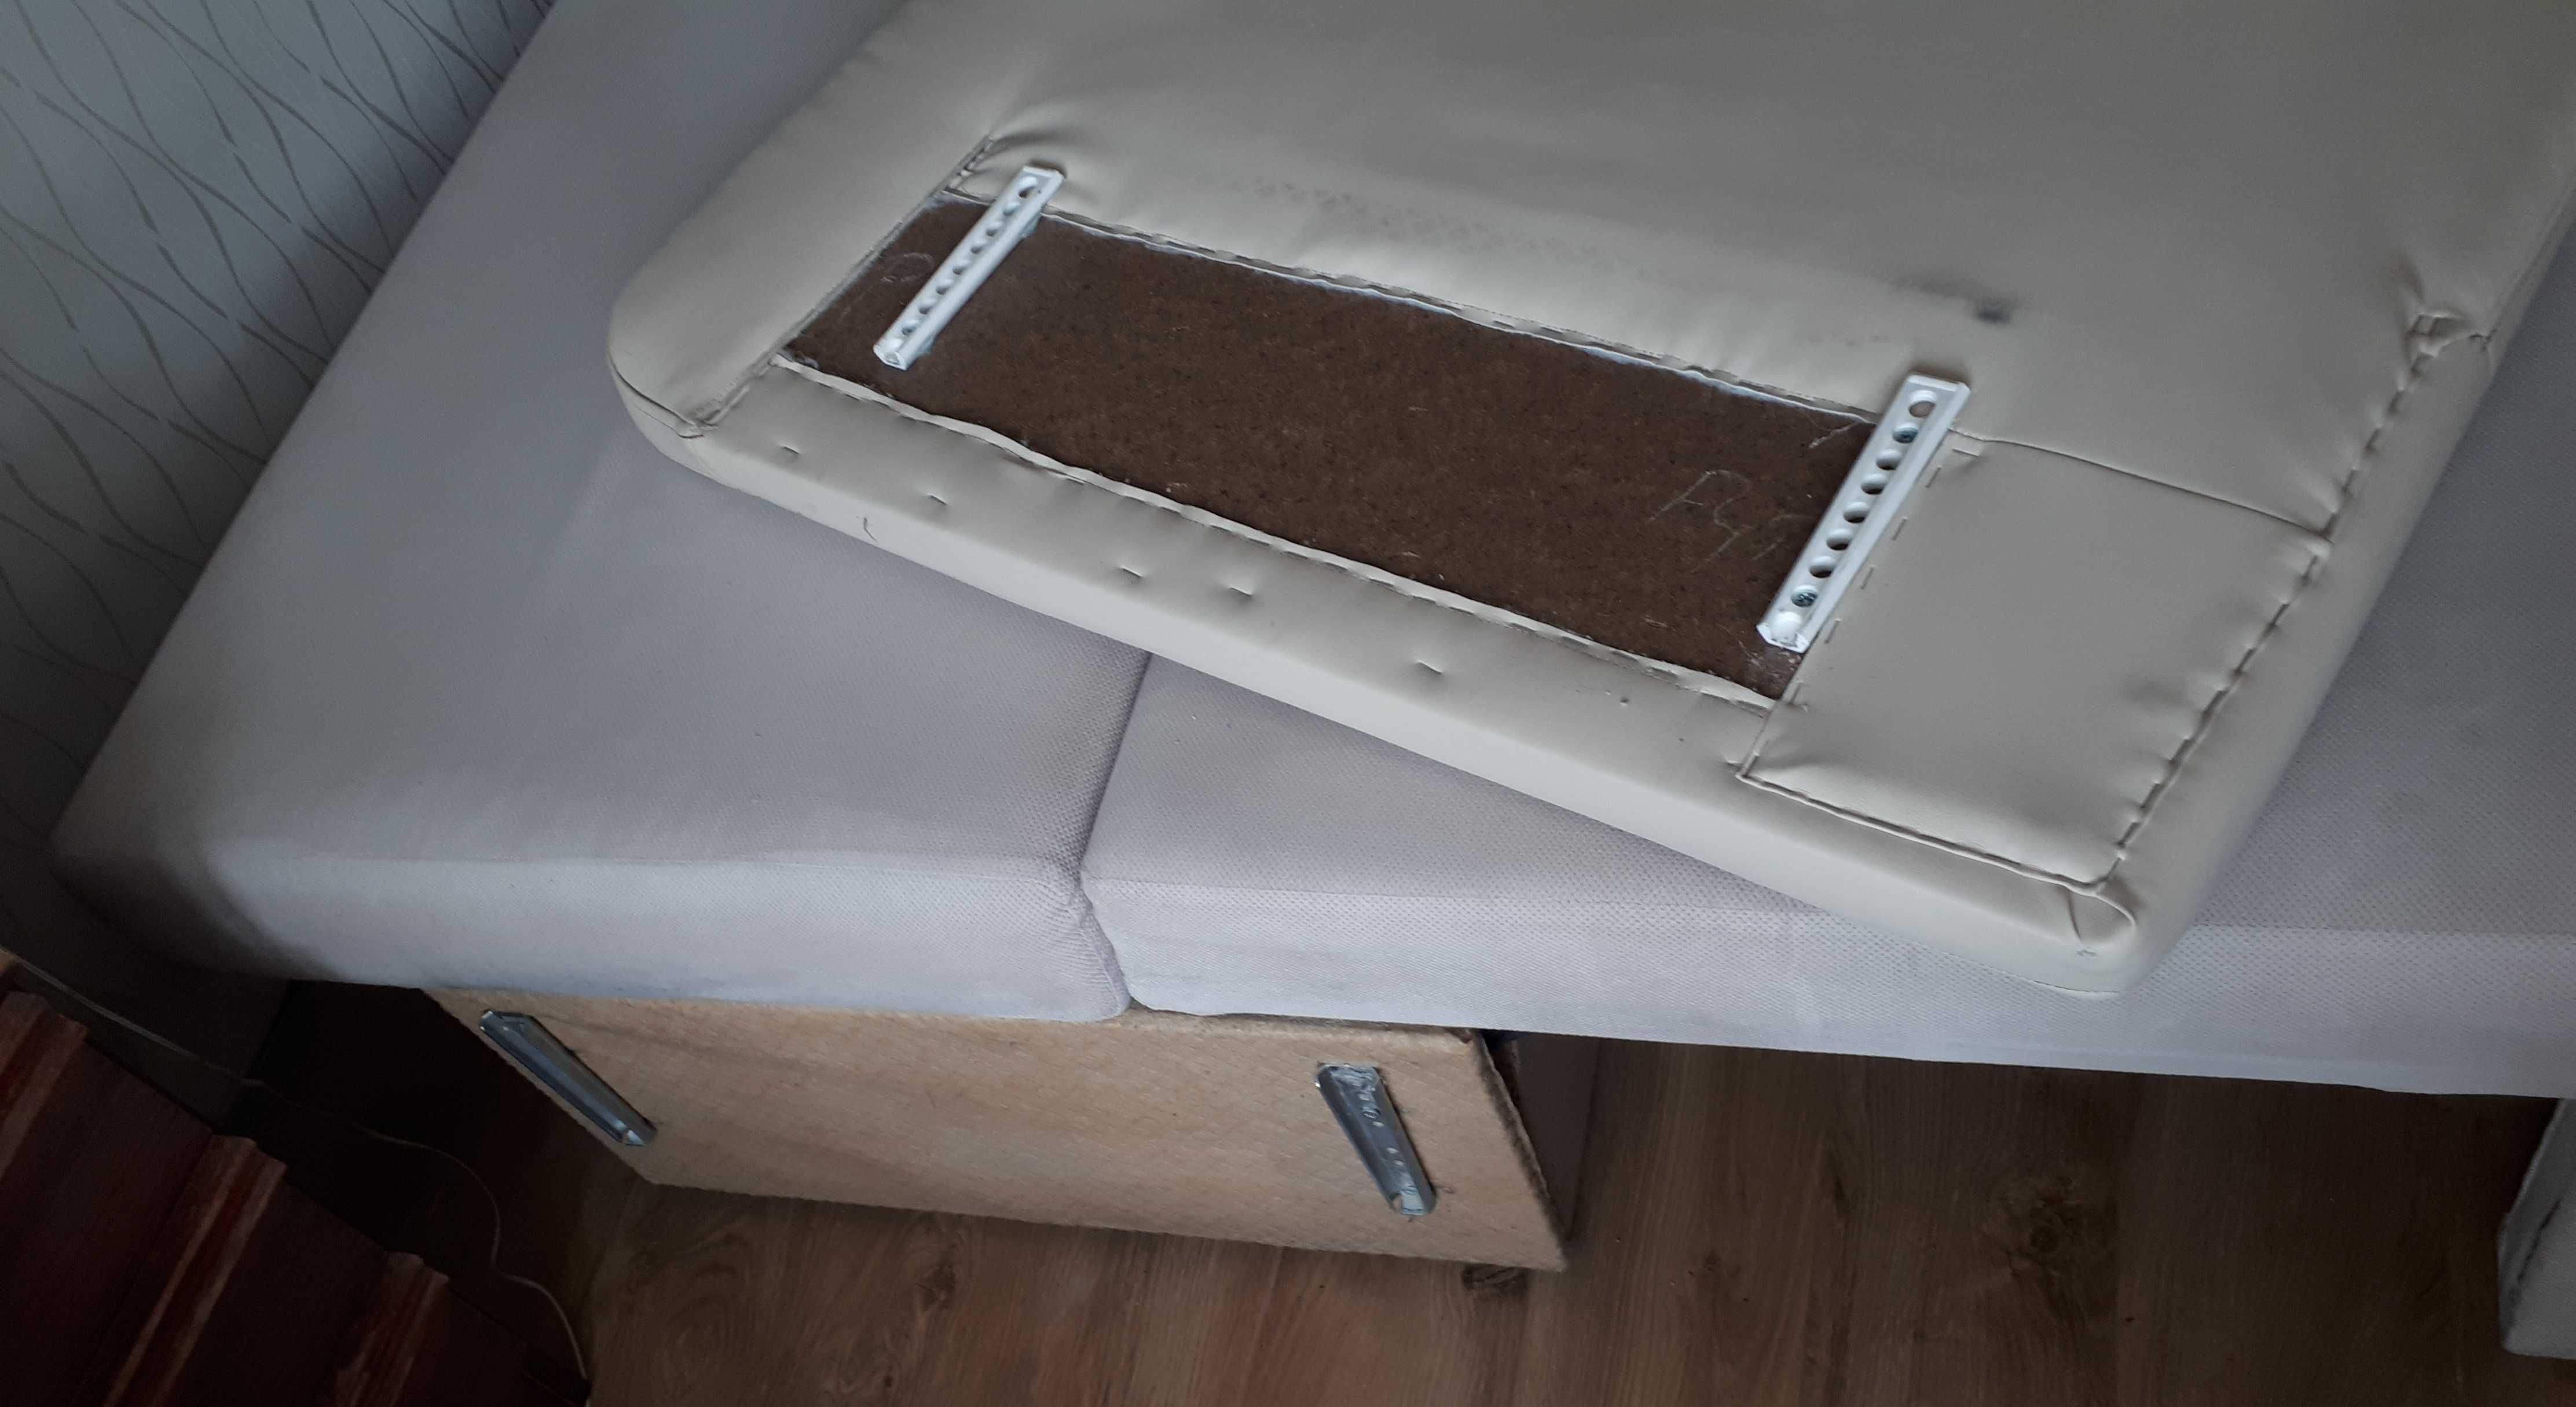 Kanapa rozkładana sofa, powierzchnia spania 197 x 144 cm